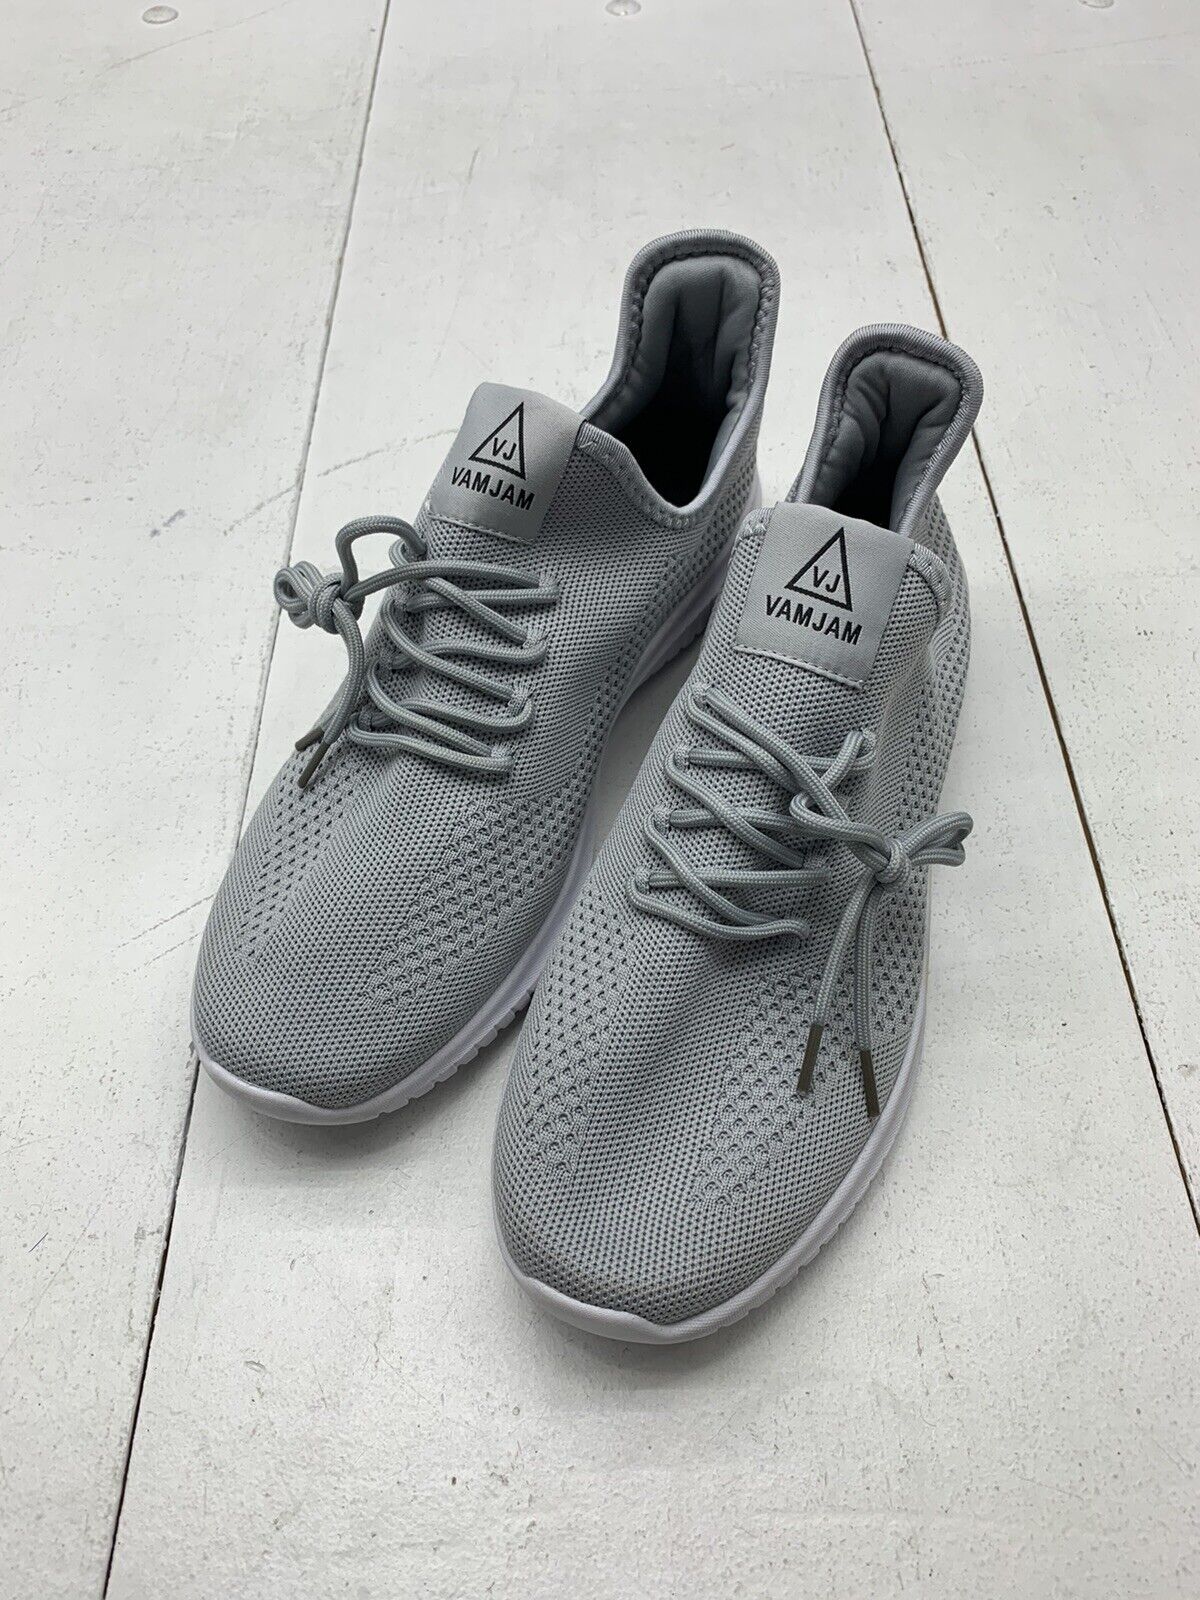 Vamjam Mens Grey Athletic Sneakers Size 11